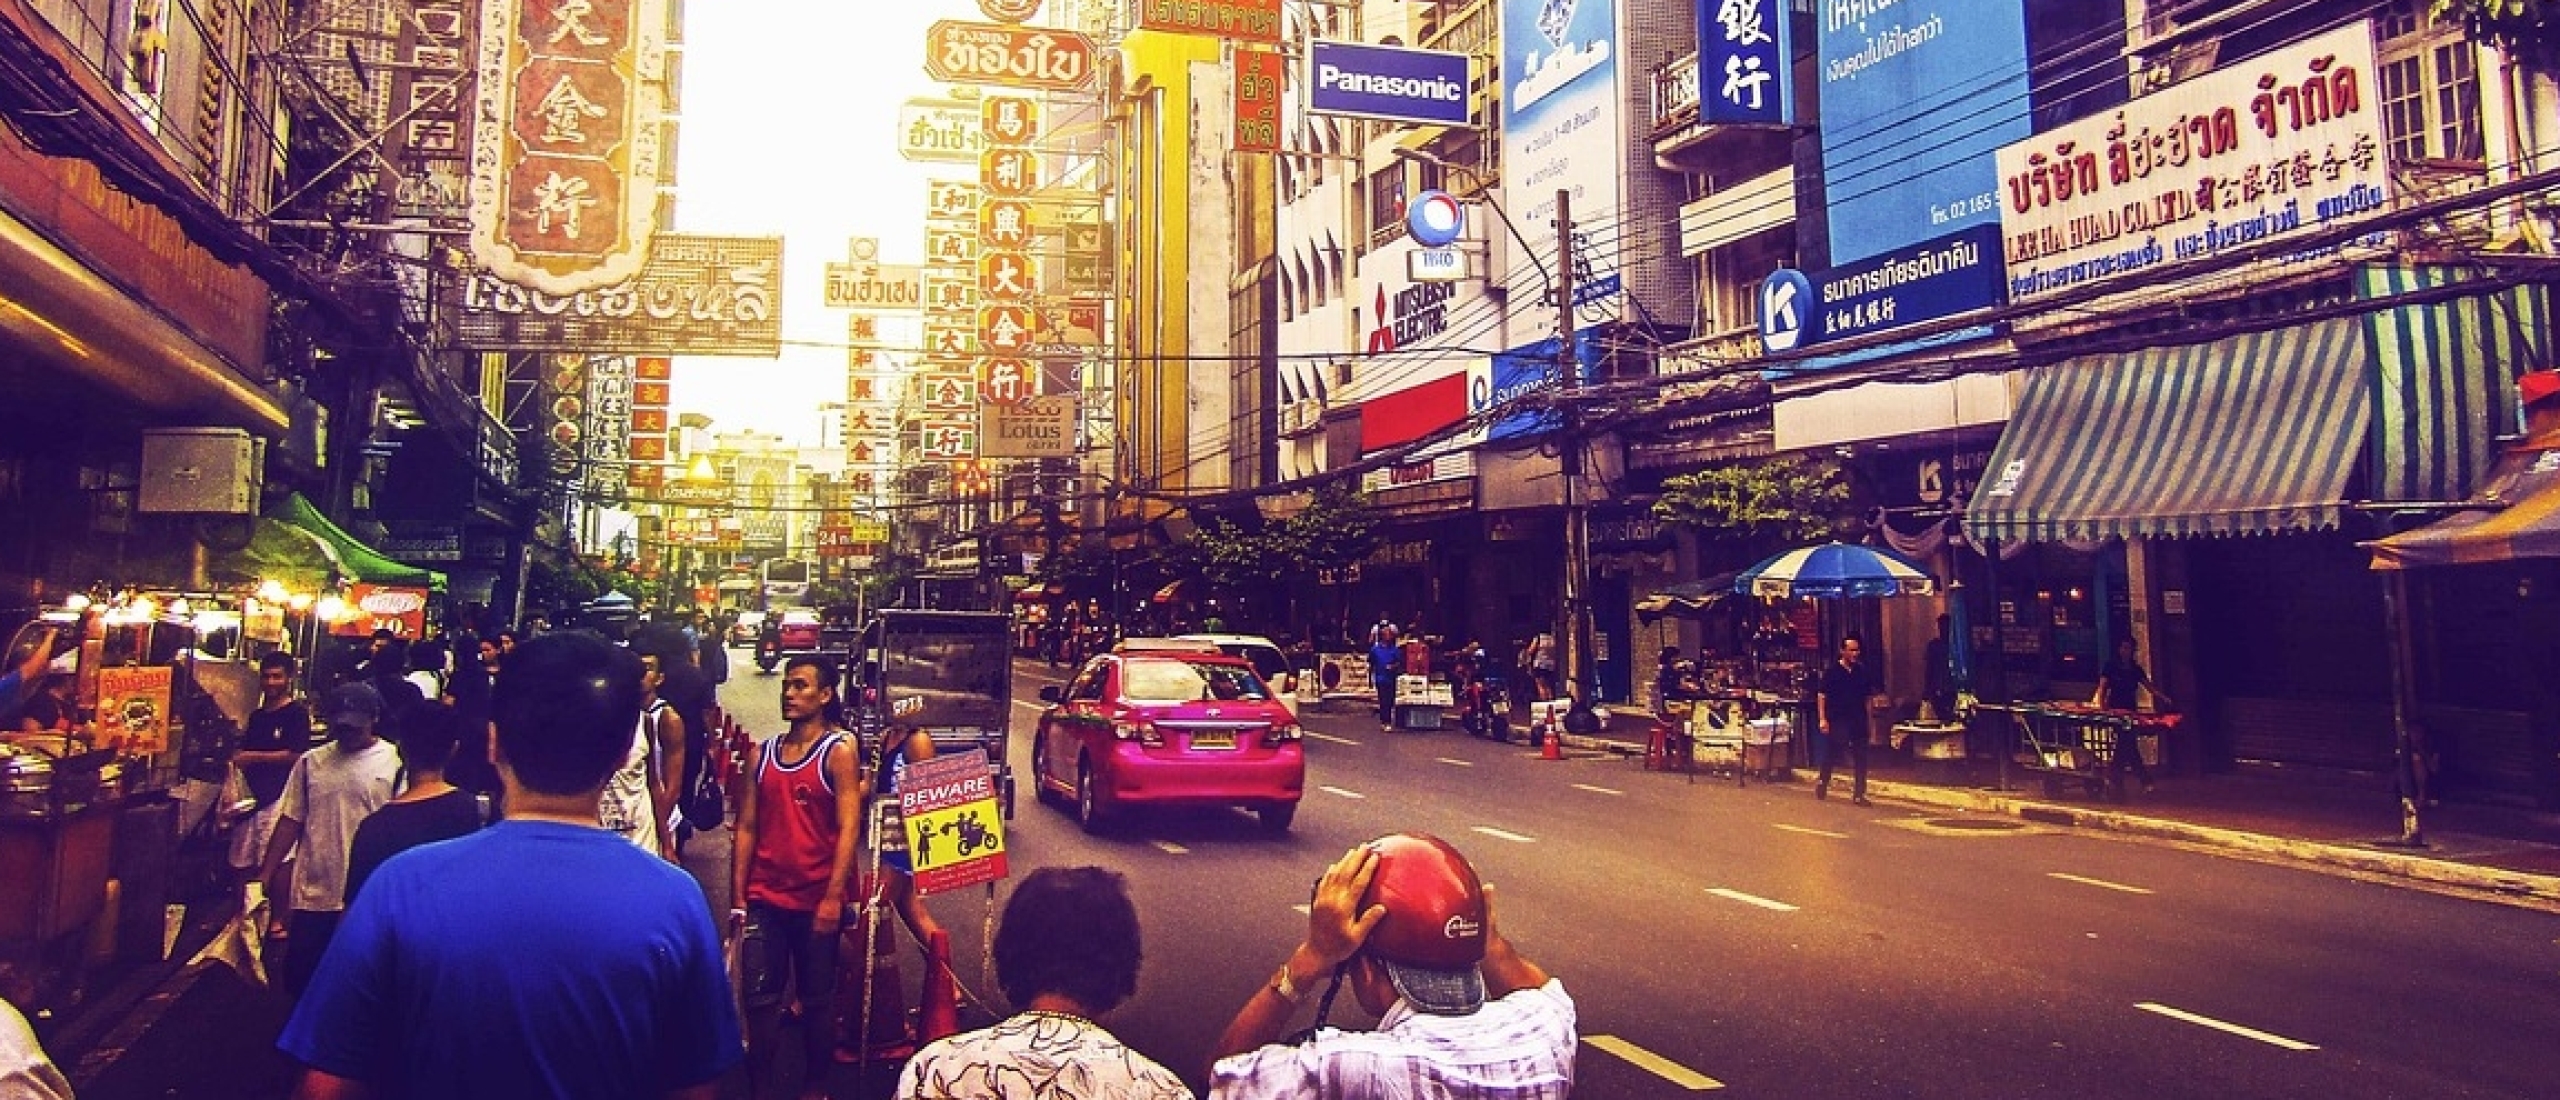 Bangkok-straten